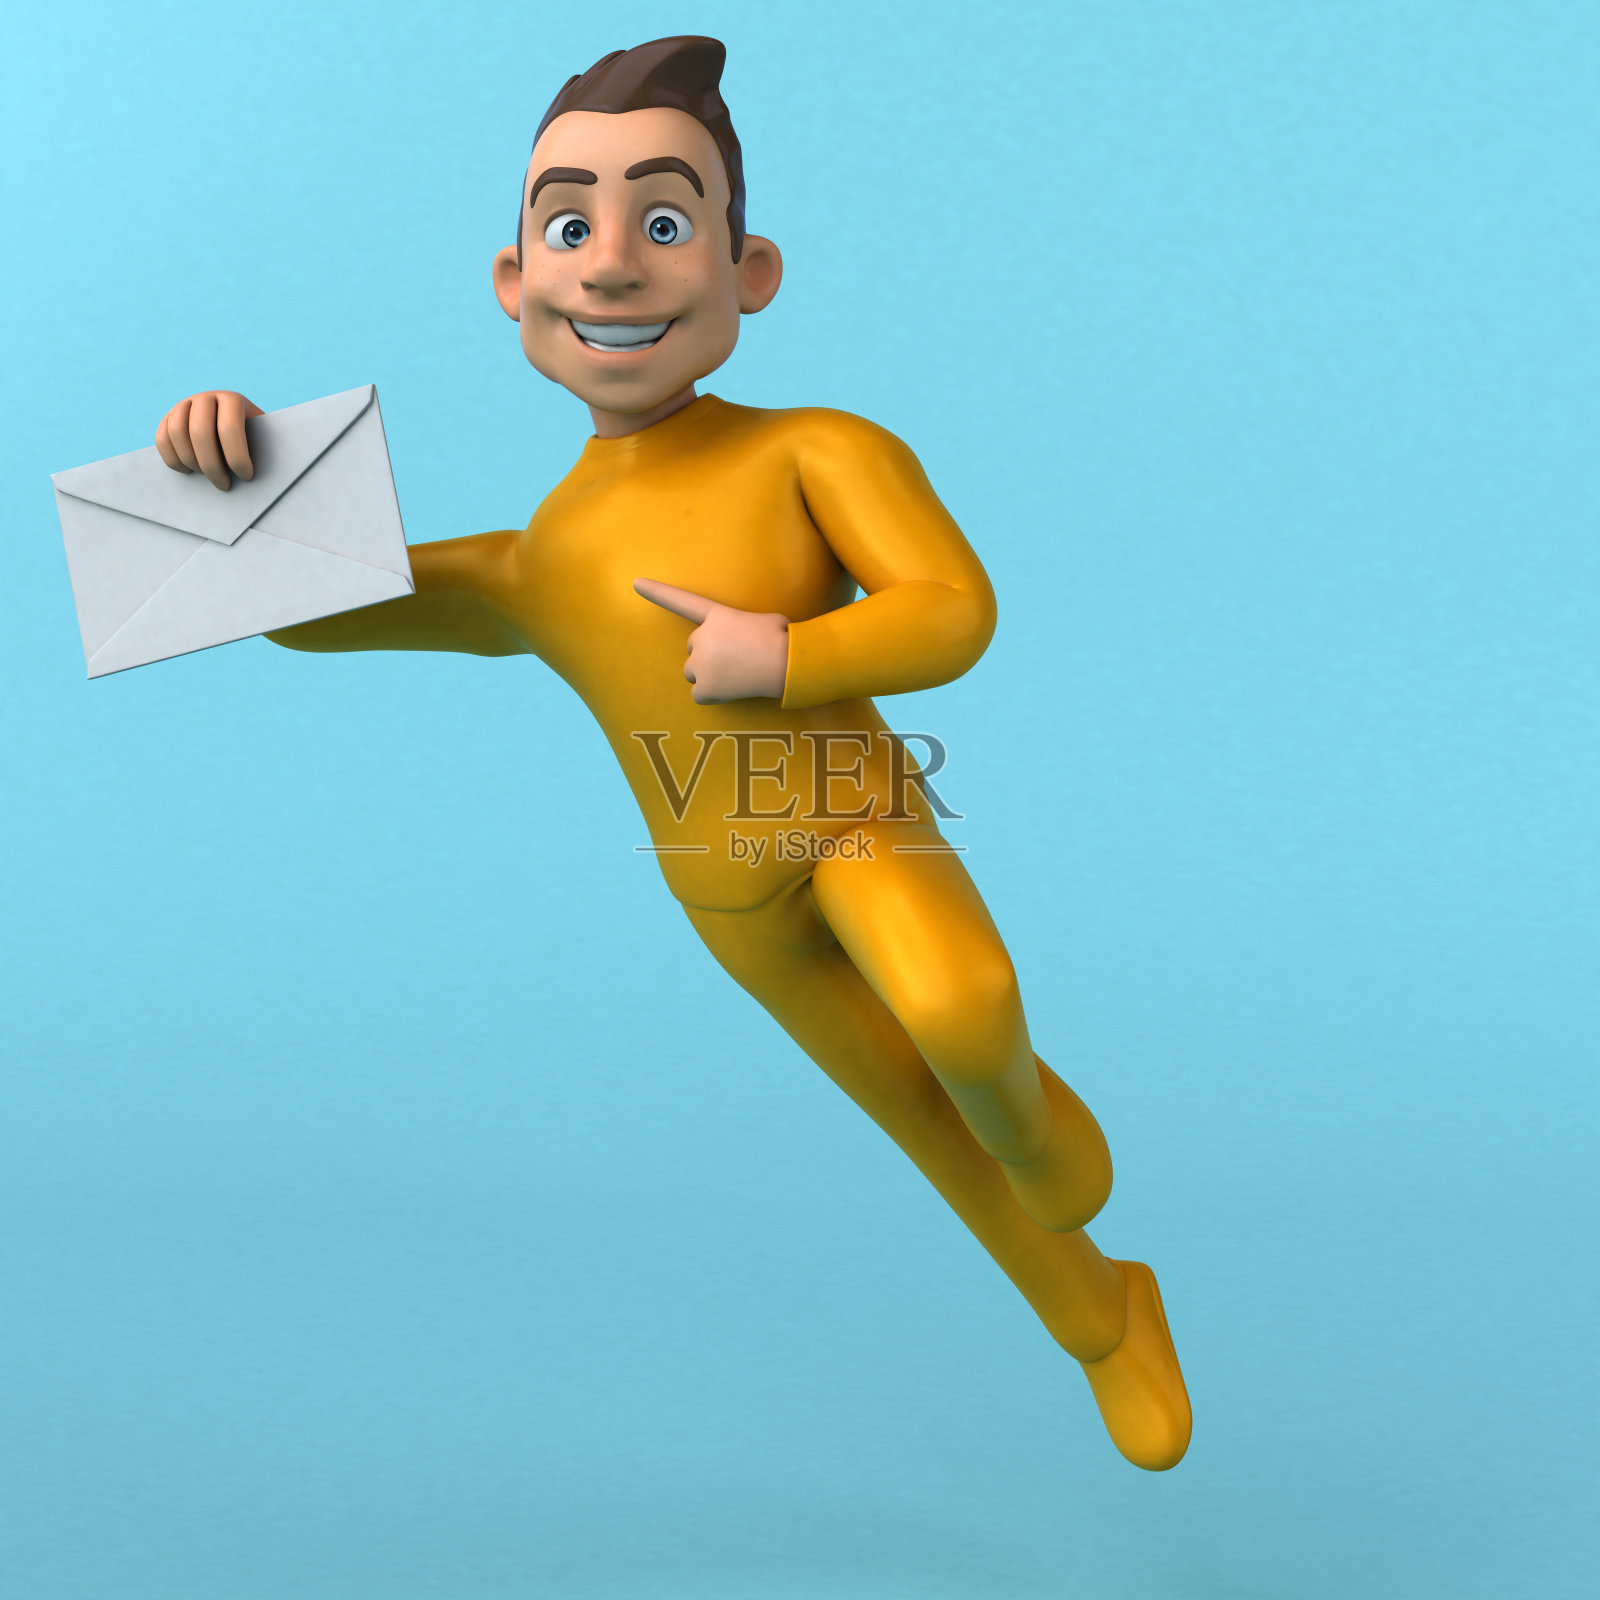 有趣的3D卡通黄色人物插画图片素材